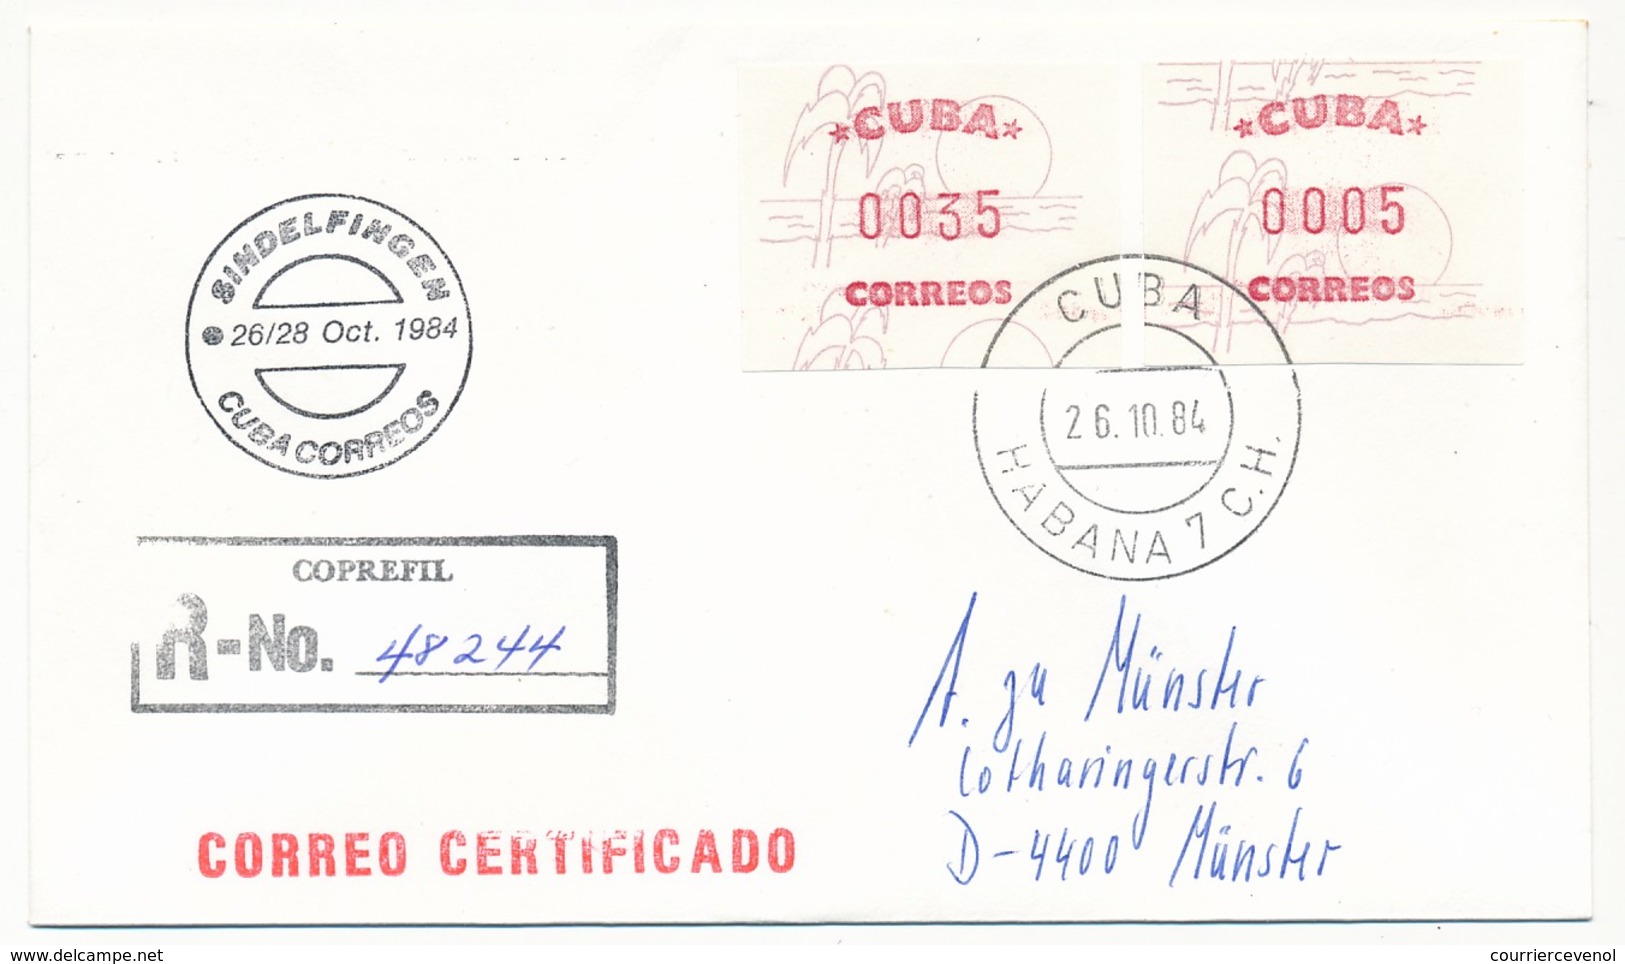 CUBA - 12 docs (cartons + enveloppes) affranchies vignettes d'affranchissement - Salon philatélique de Hambourg - 1984